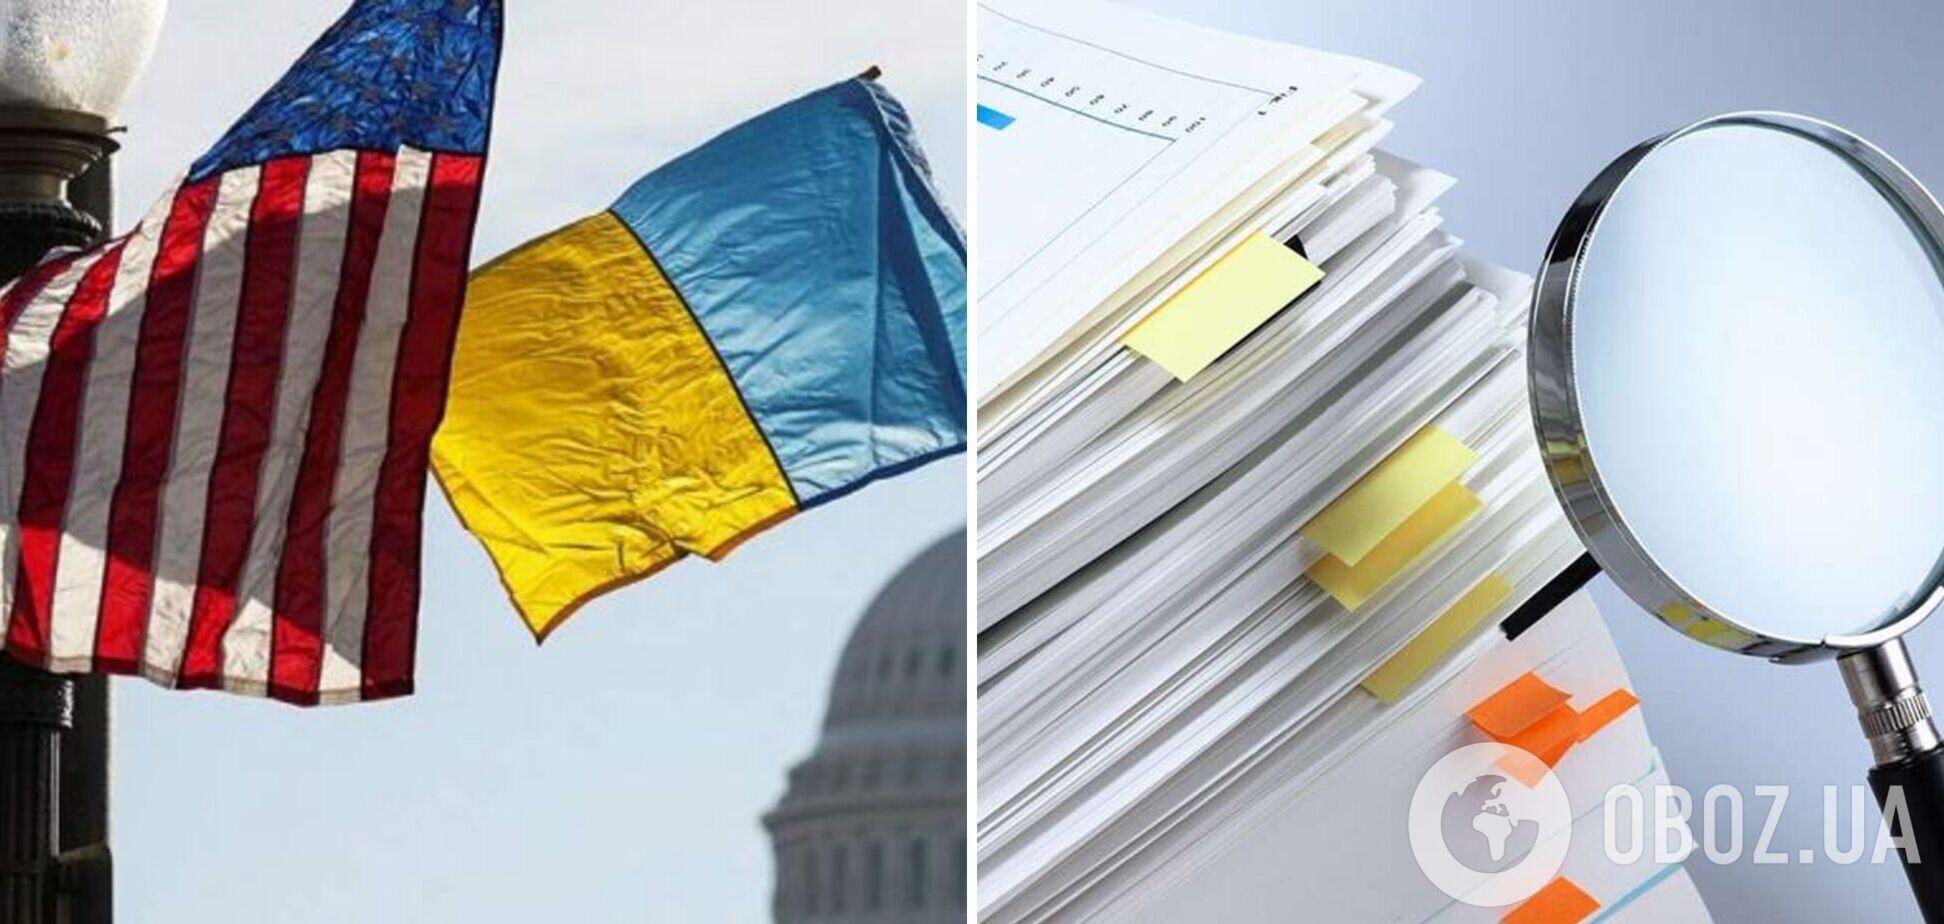 В Пентагоне признались, что переоценили стоимость помощи Украине более чем на $6 млрд